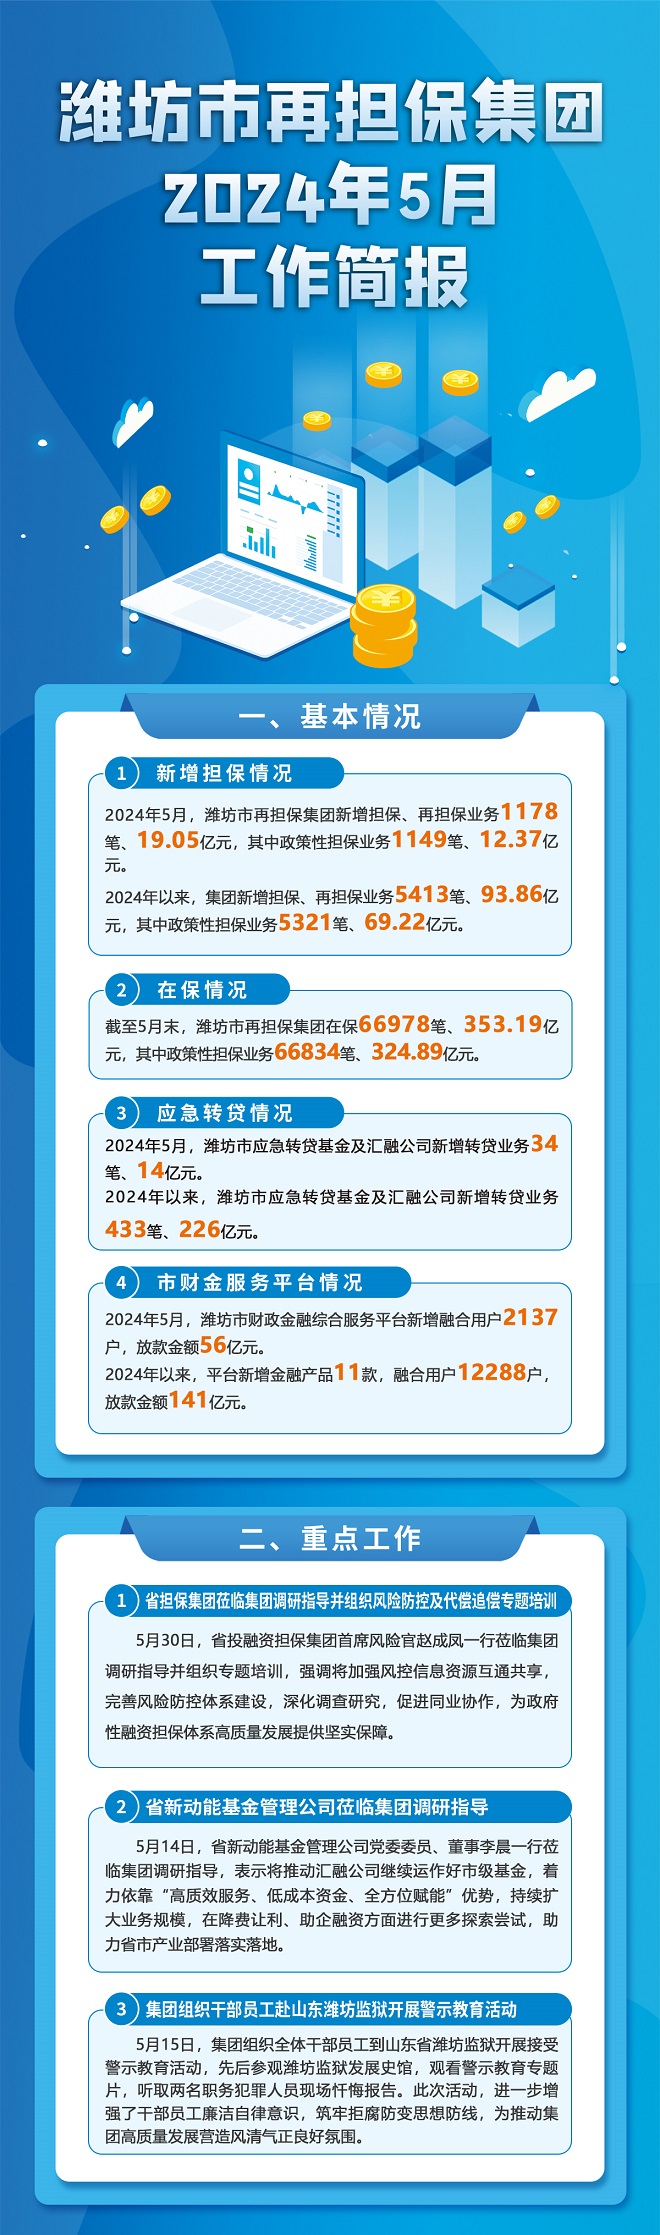 潍坊市再担保集团2024年5月工作简报 660.jpg